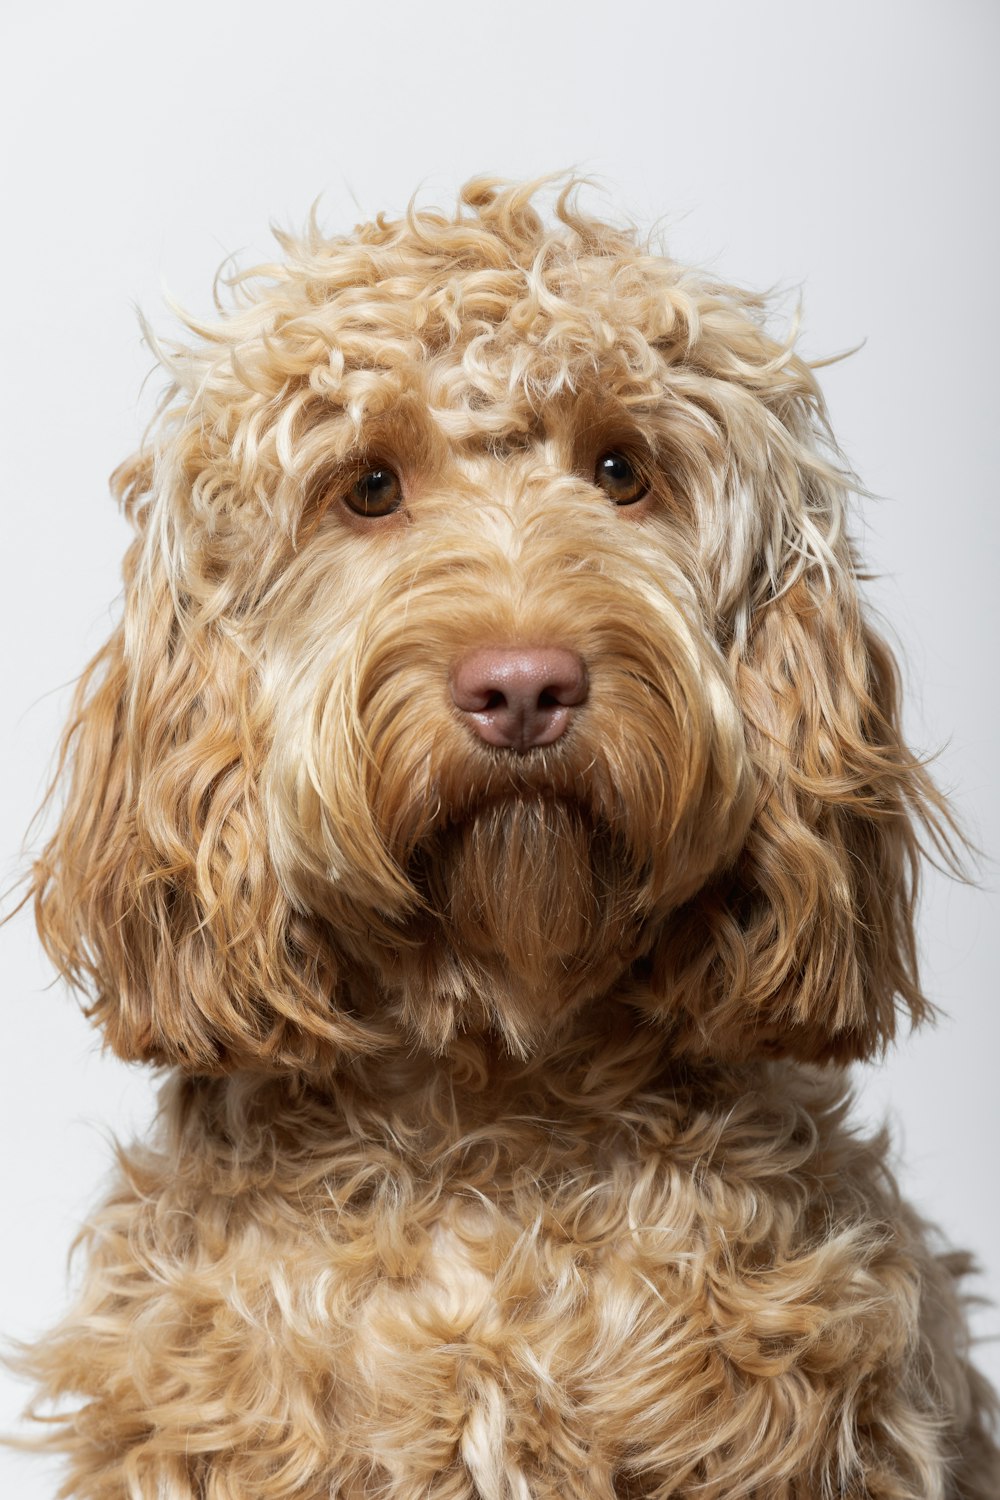 a dog with fluffy hair